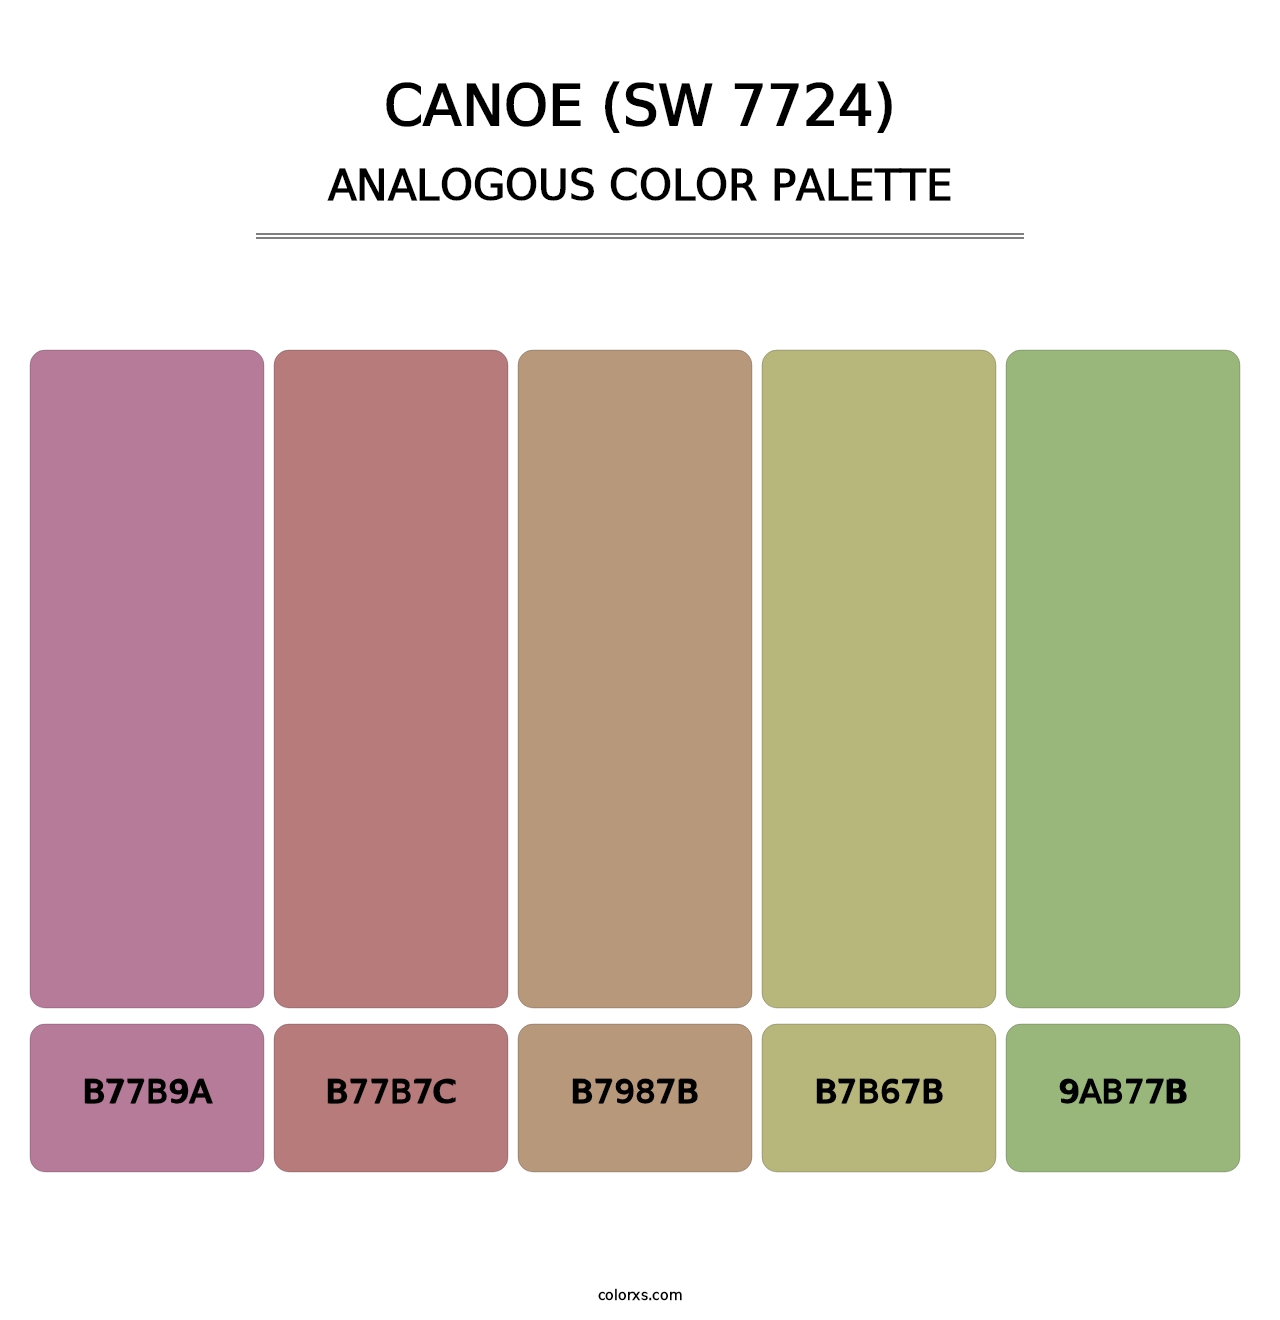 Canoe (SW 7724) - Analogous Color Palette